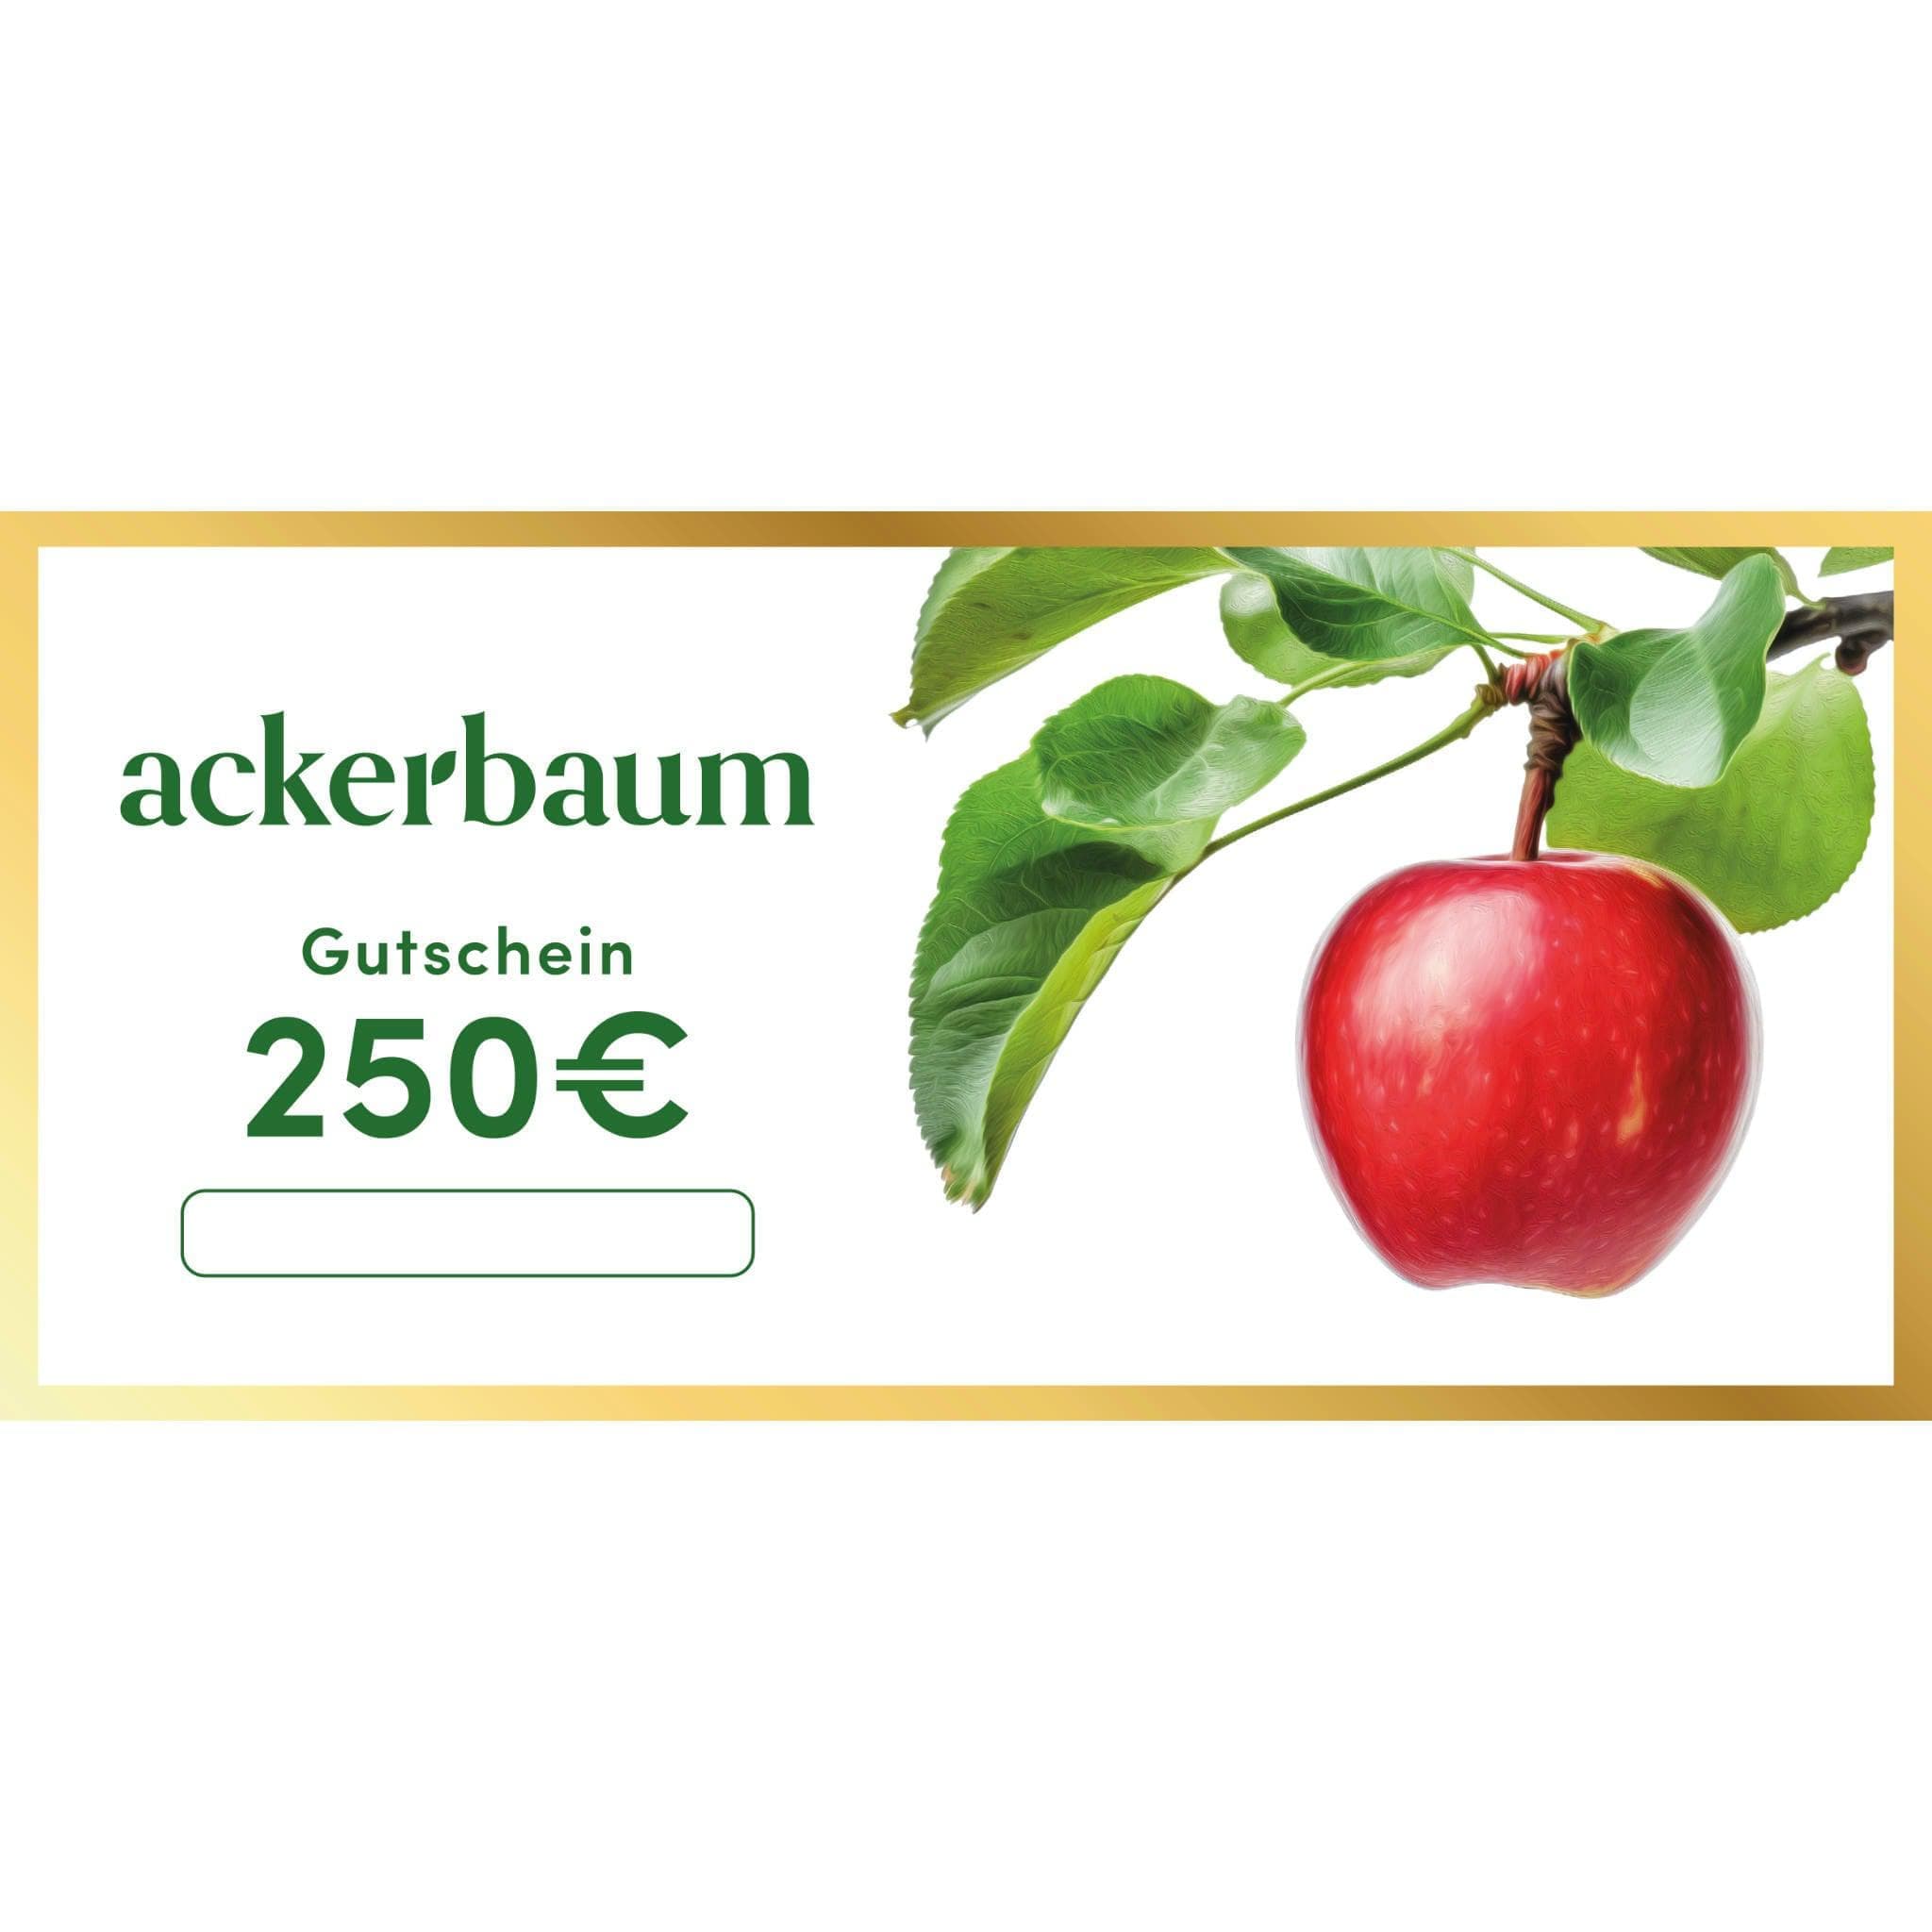 ackerbaum ackerbaum 250€ Weihnachtsgutschein - Edler Papiergutschein mit Goldrand kaufen